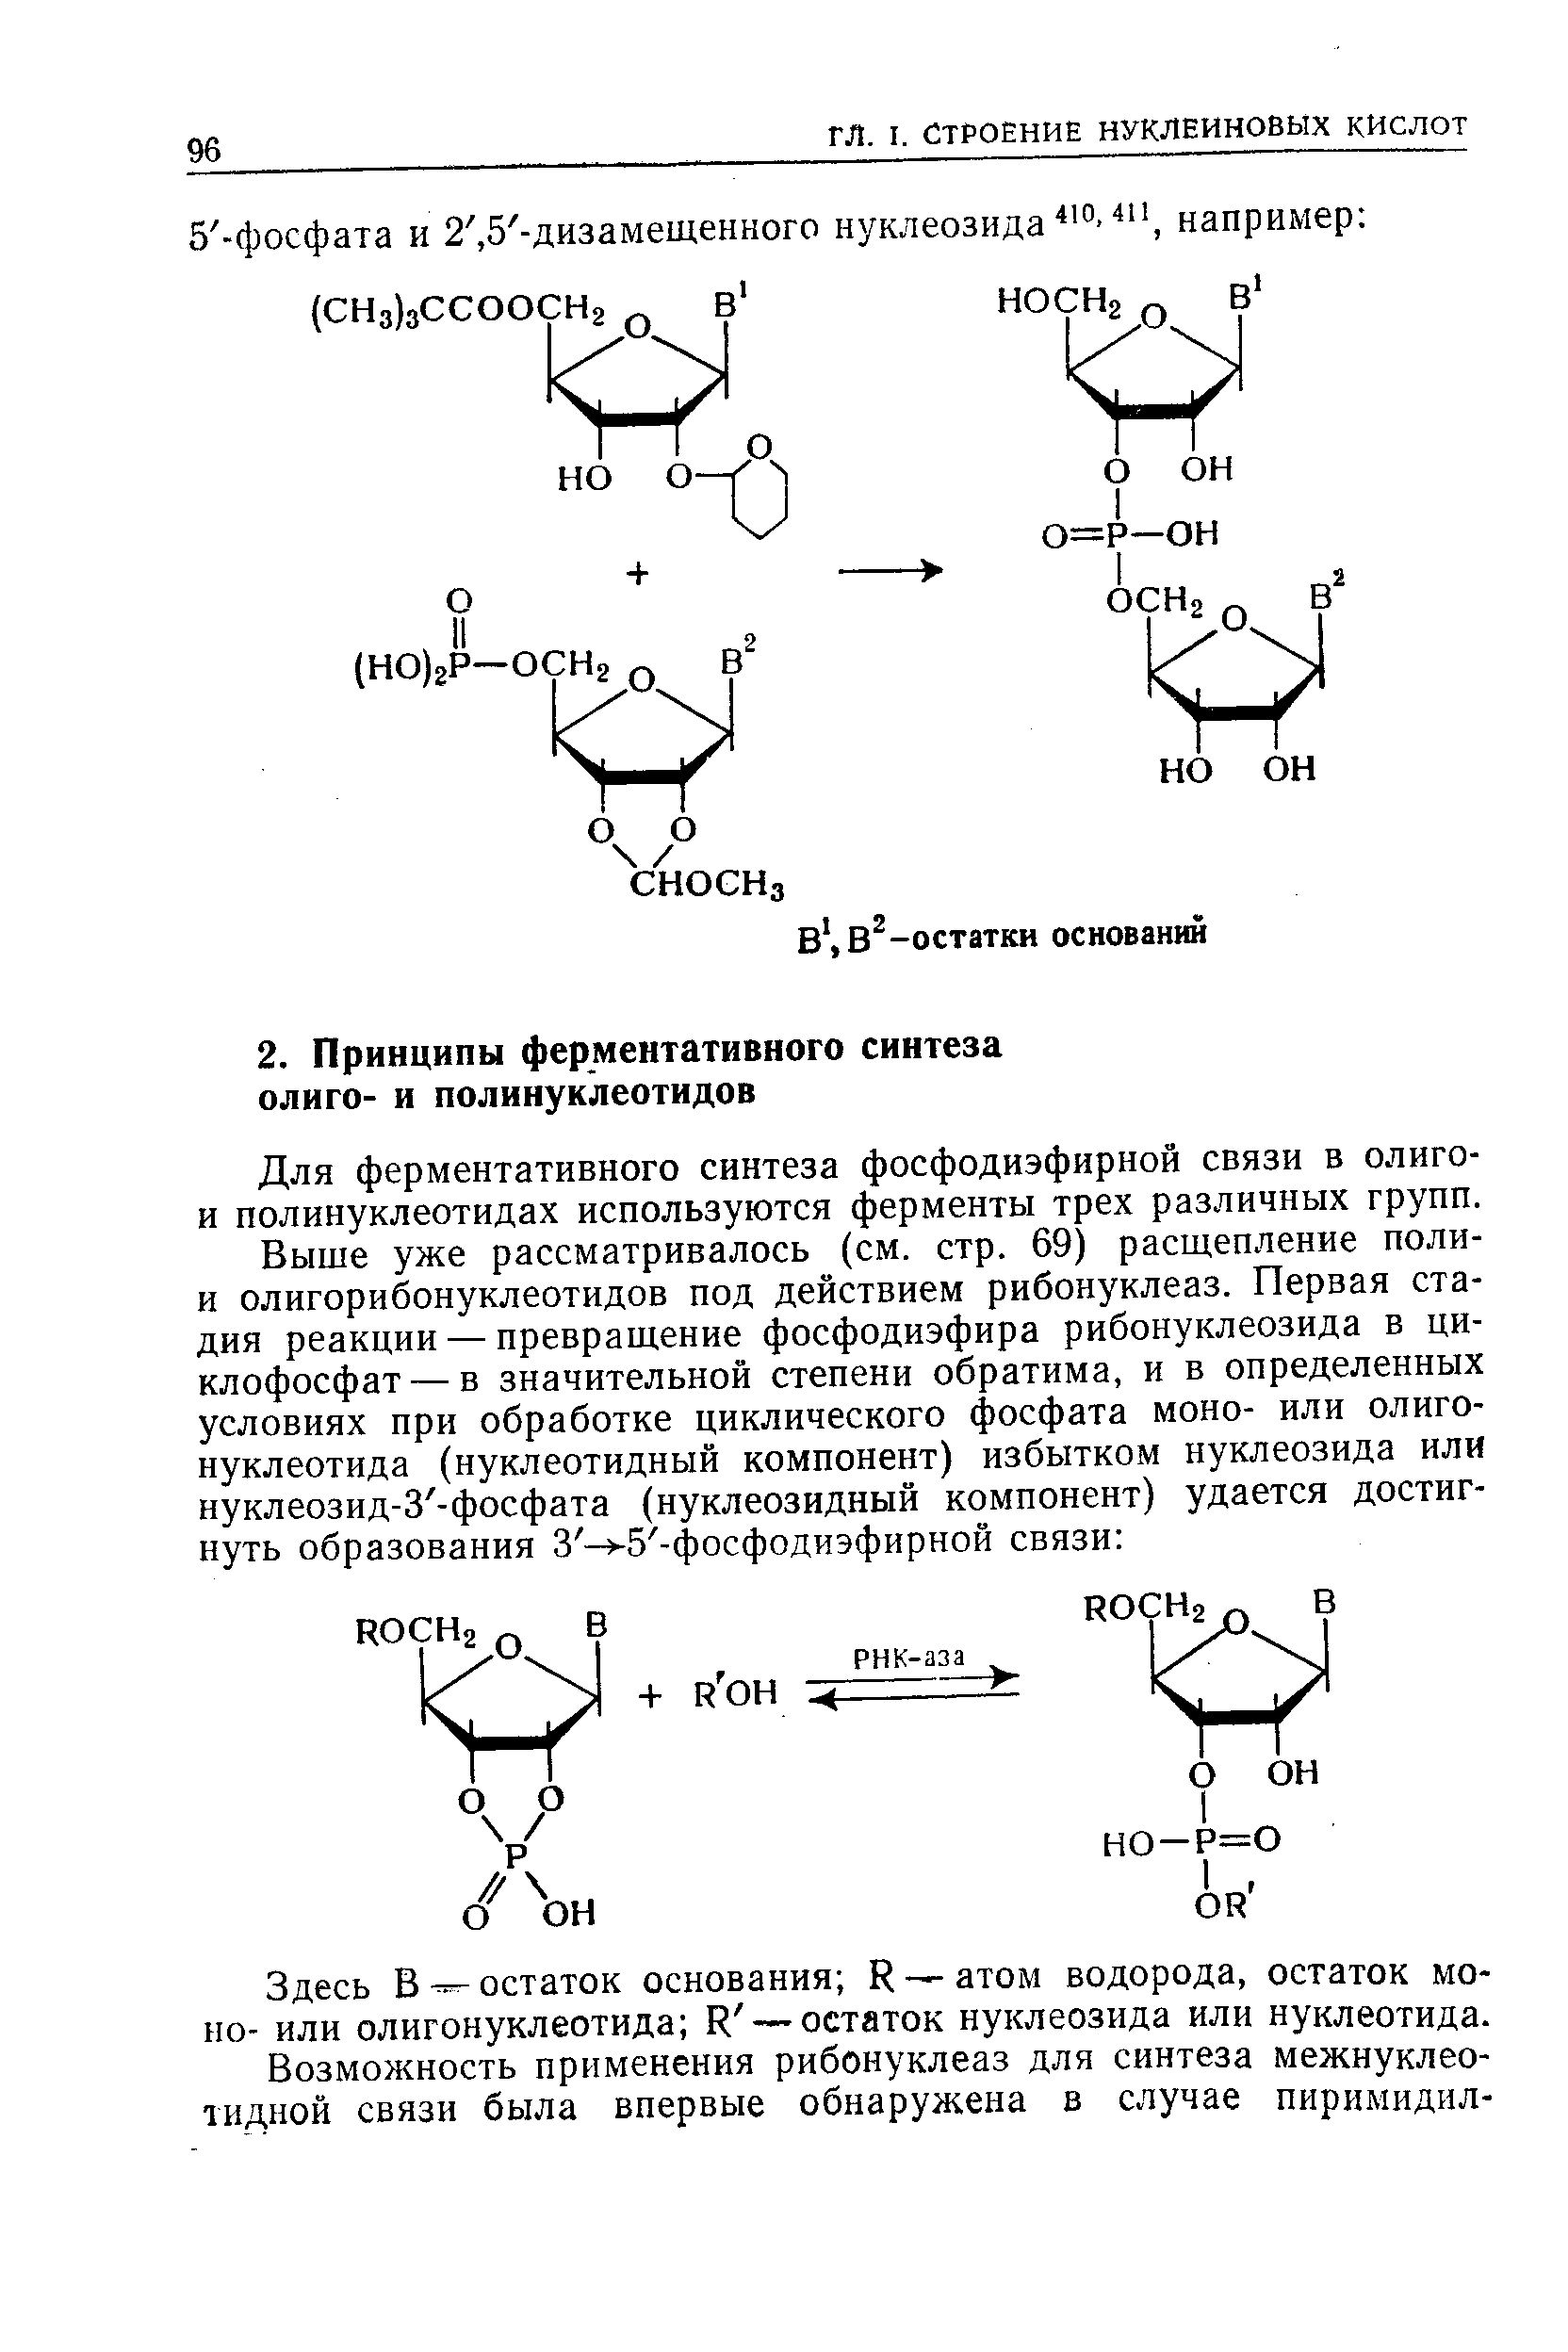 Для ферментативного синтеза фосфодиэфирной связи в олиго-и полинуклеотидах используются ферменты трех различных групп.